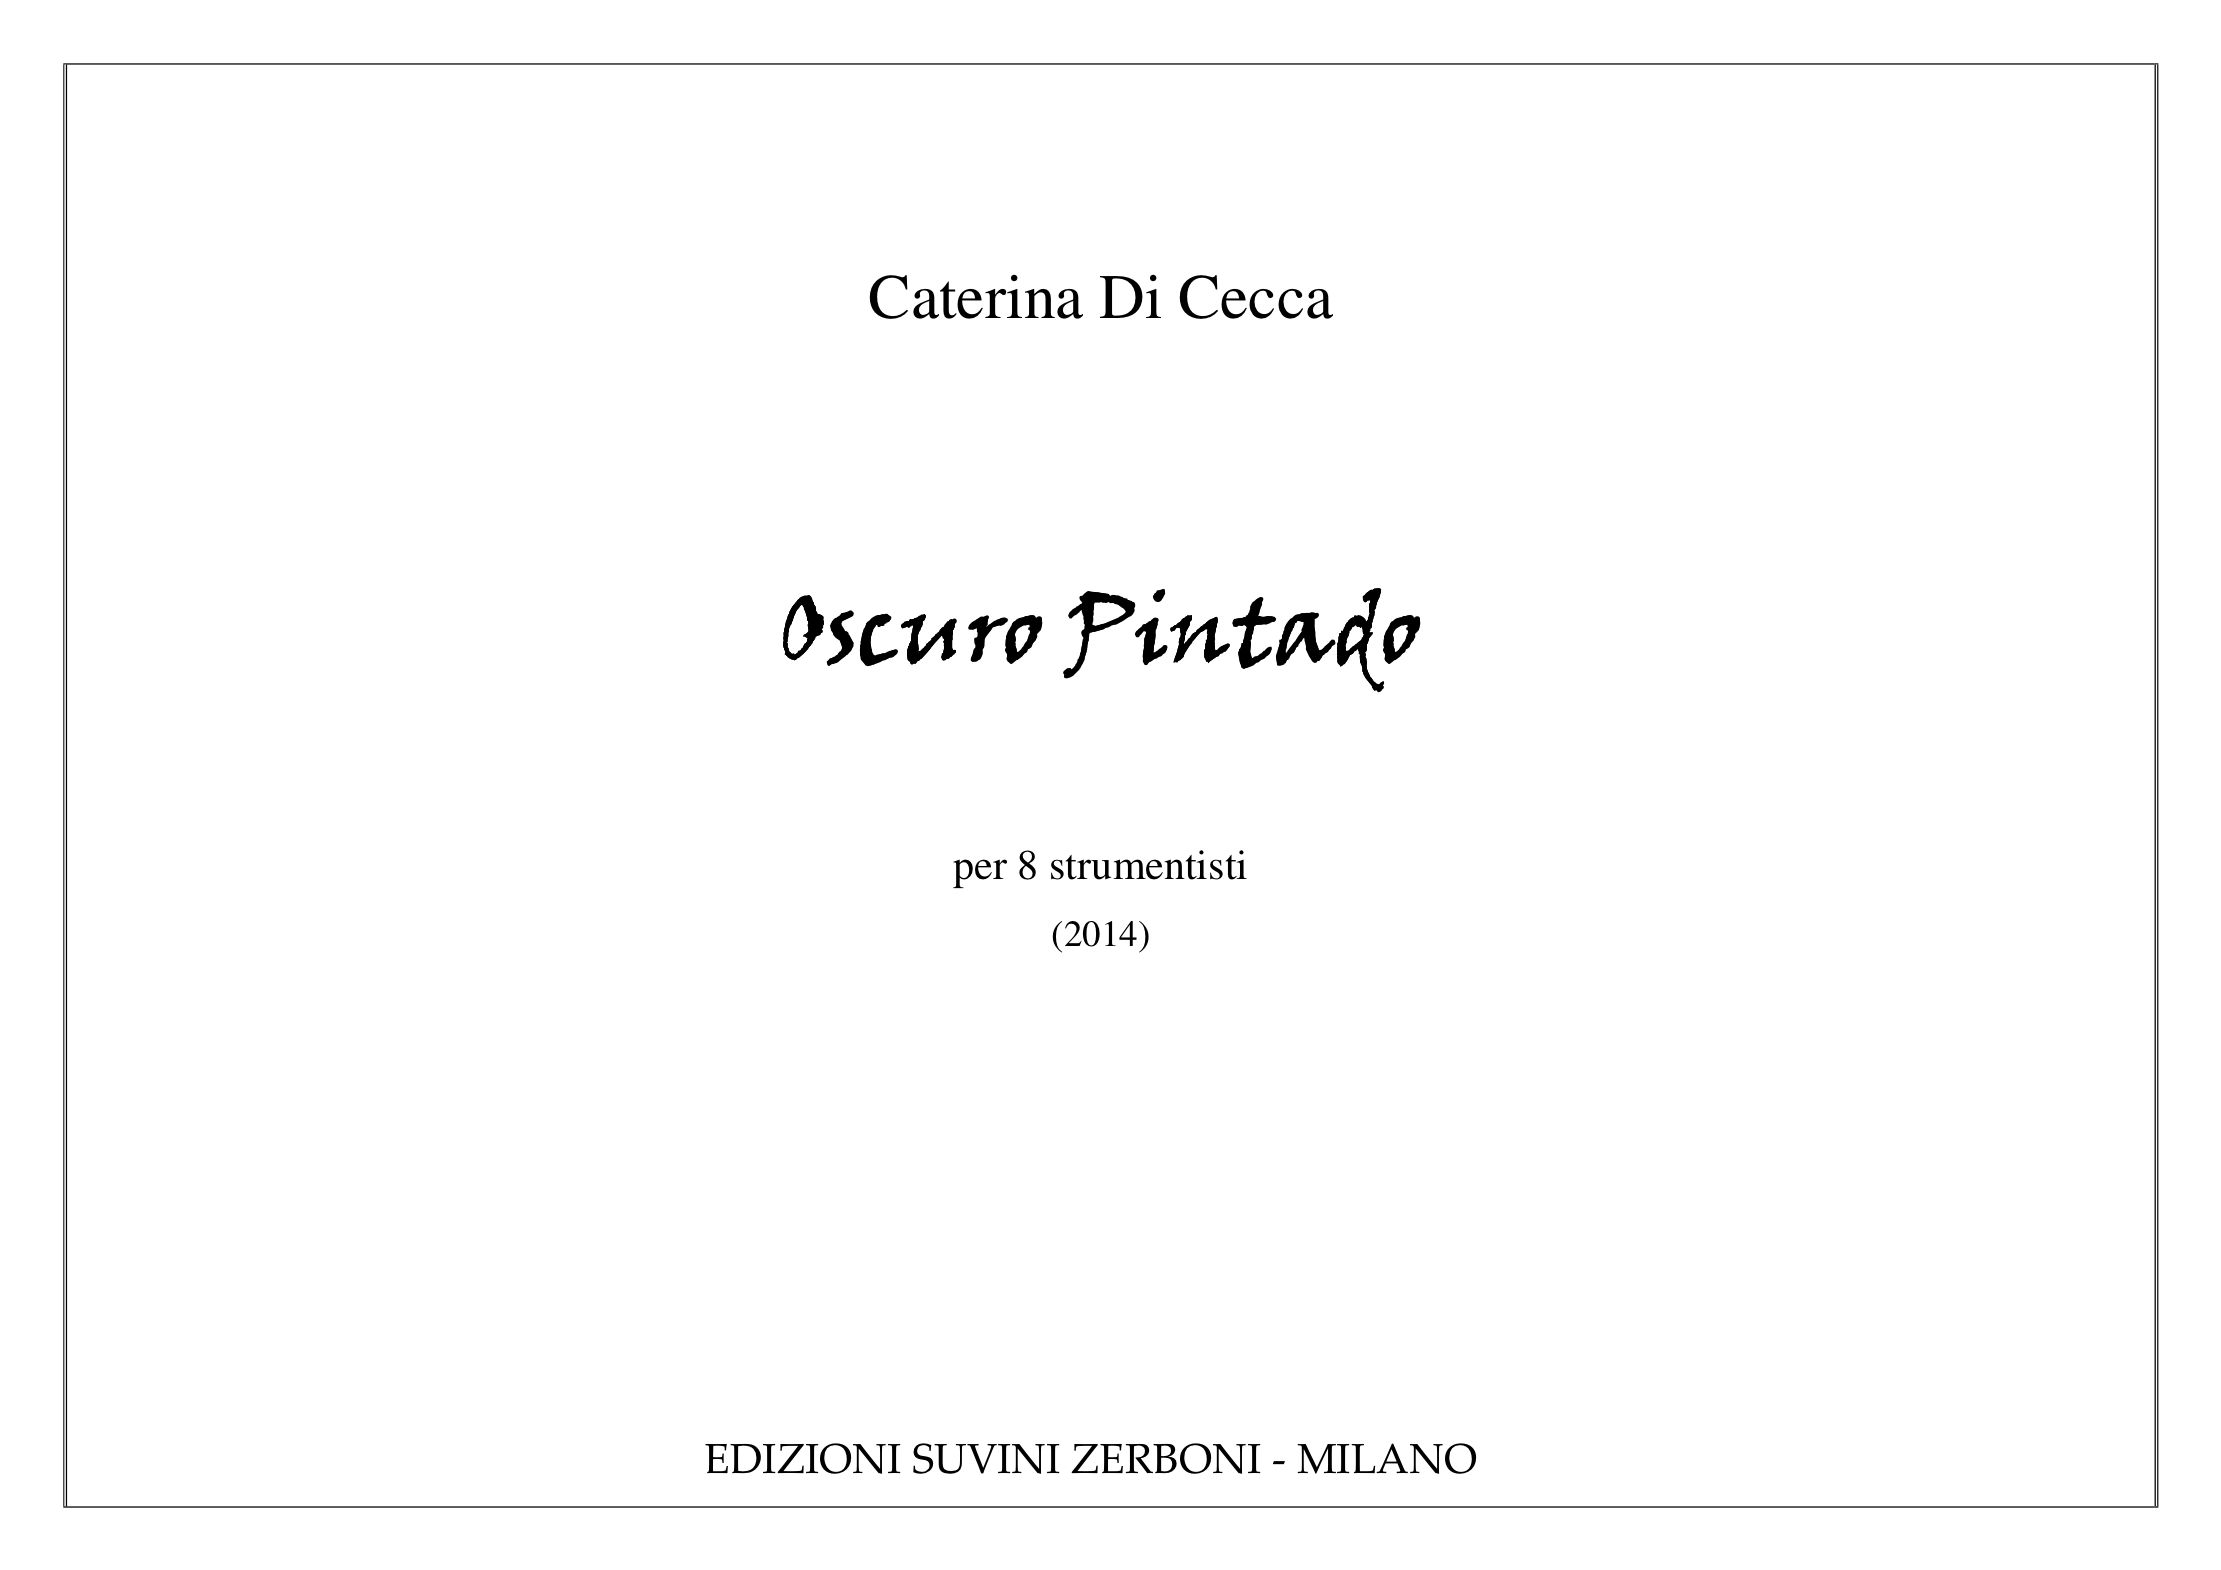 OSCURO PINTADO_Di Cecca 1